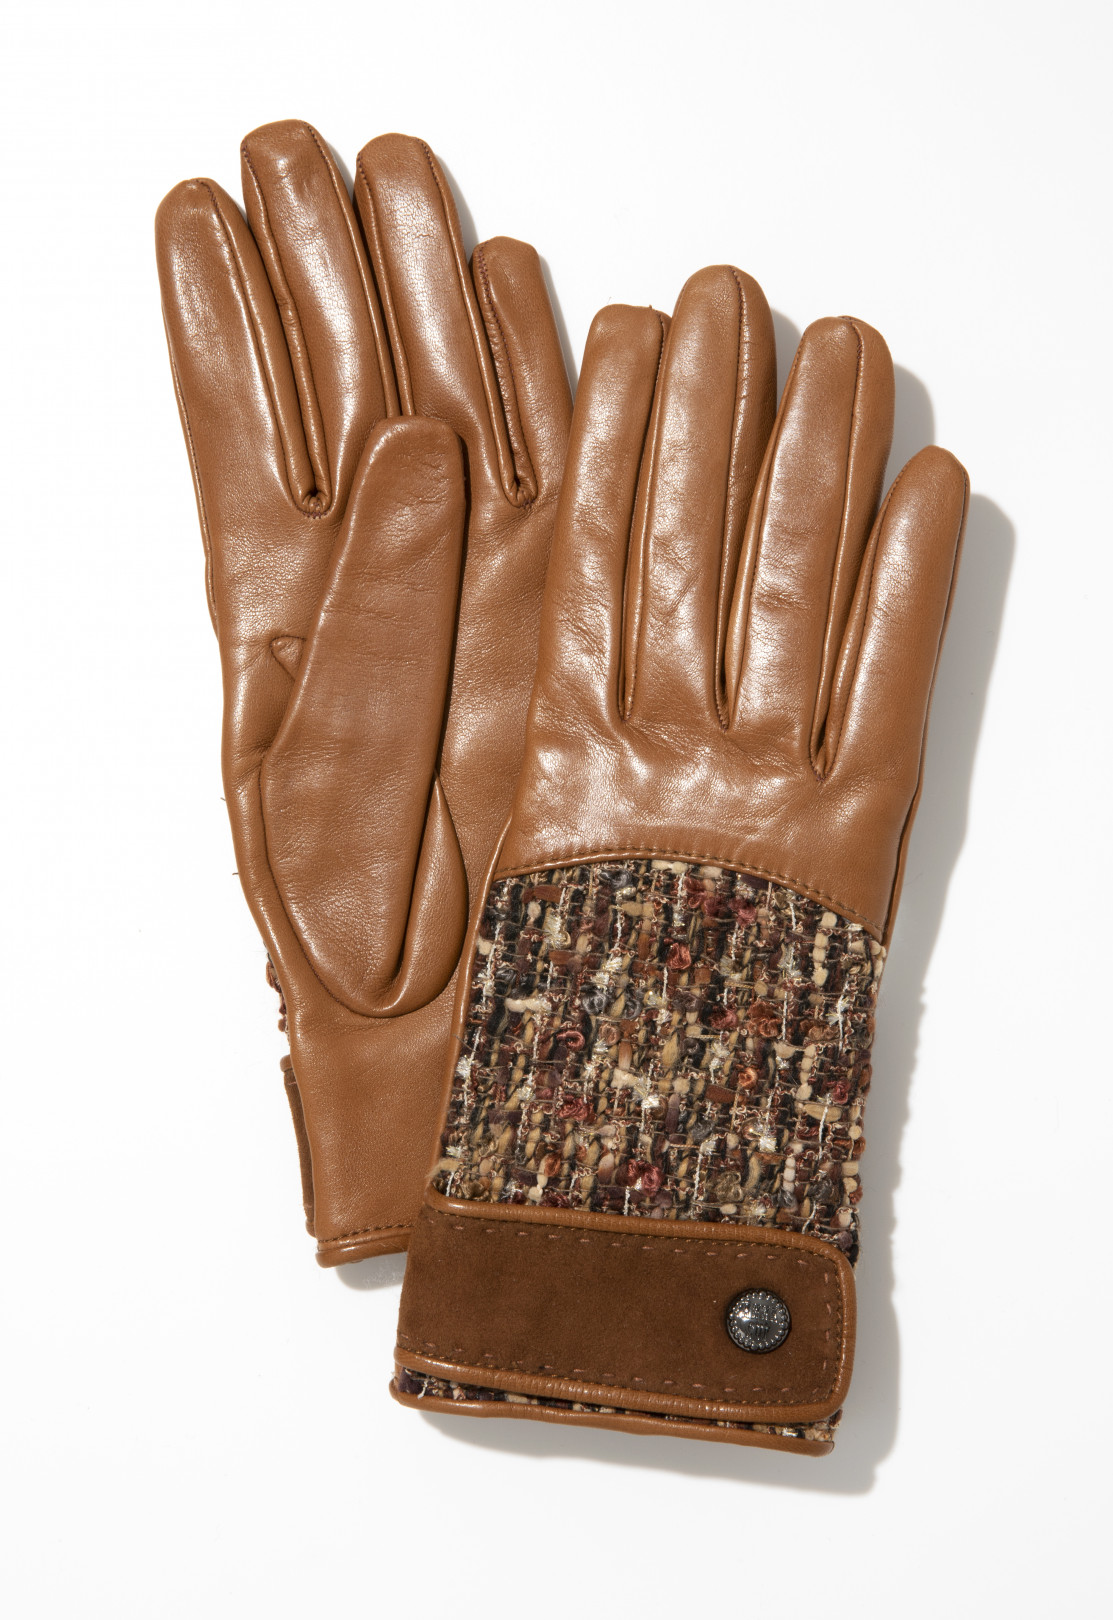 英国高級服地Holland&Sherry社のツイード生地を使用した上質な手袋。グローブ＜キャメル＞2万,520円